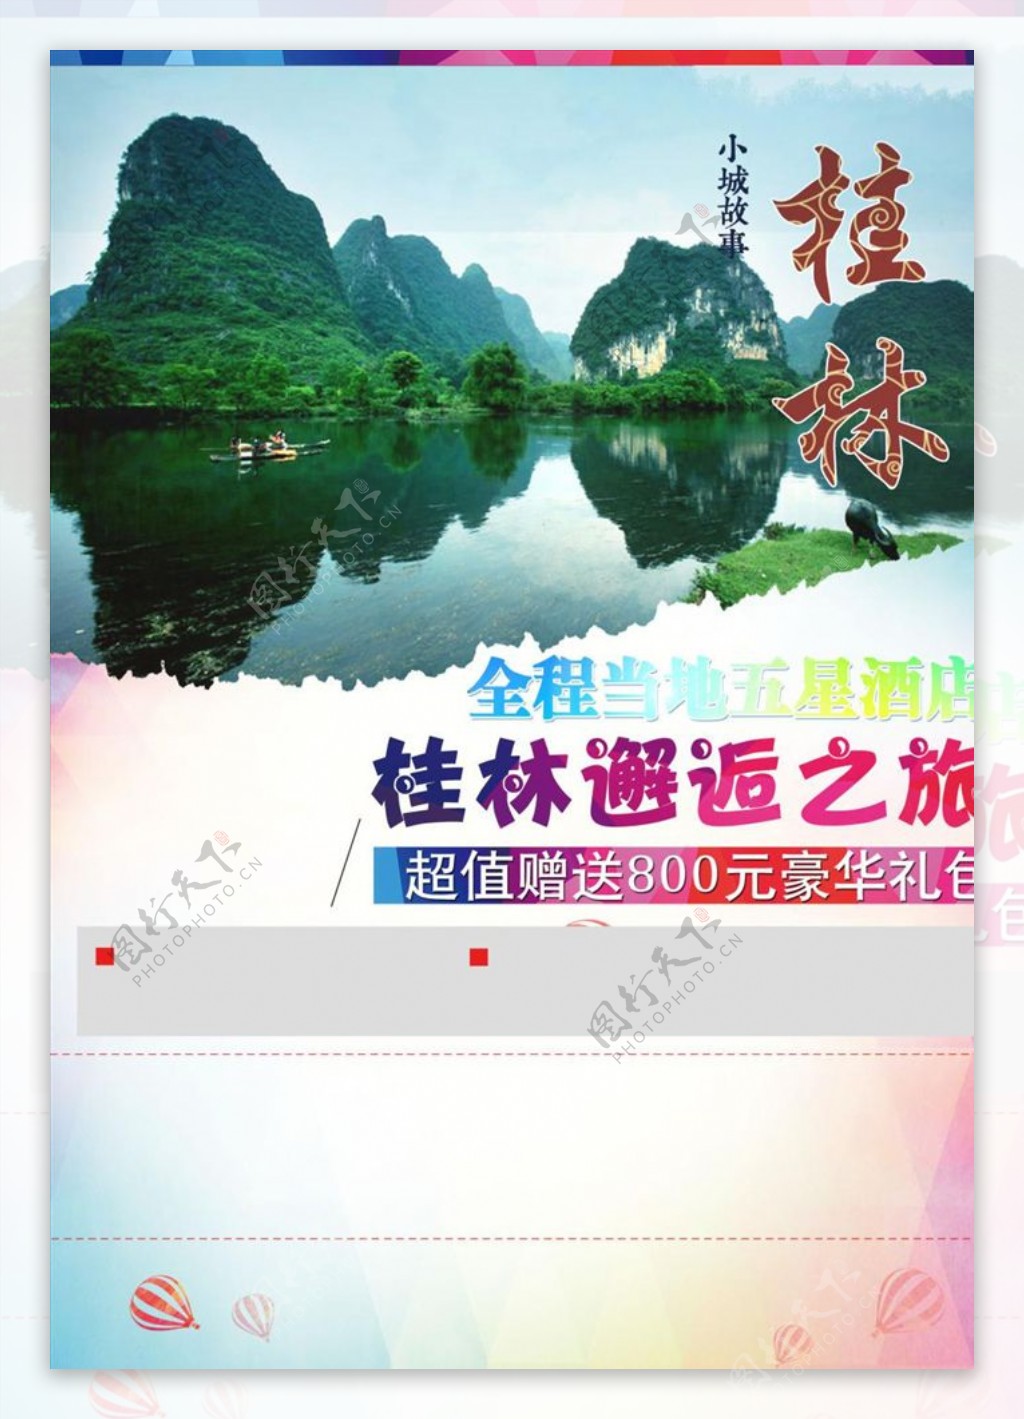 桂林旅游海报模板源文件宣传活动